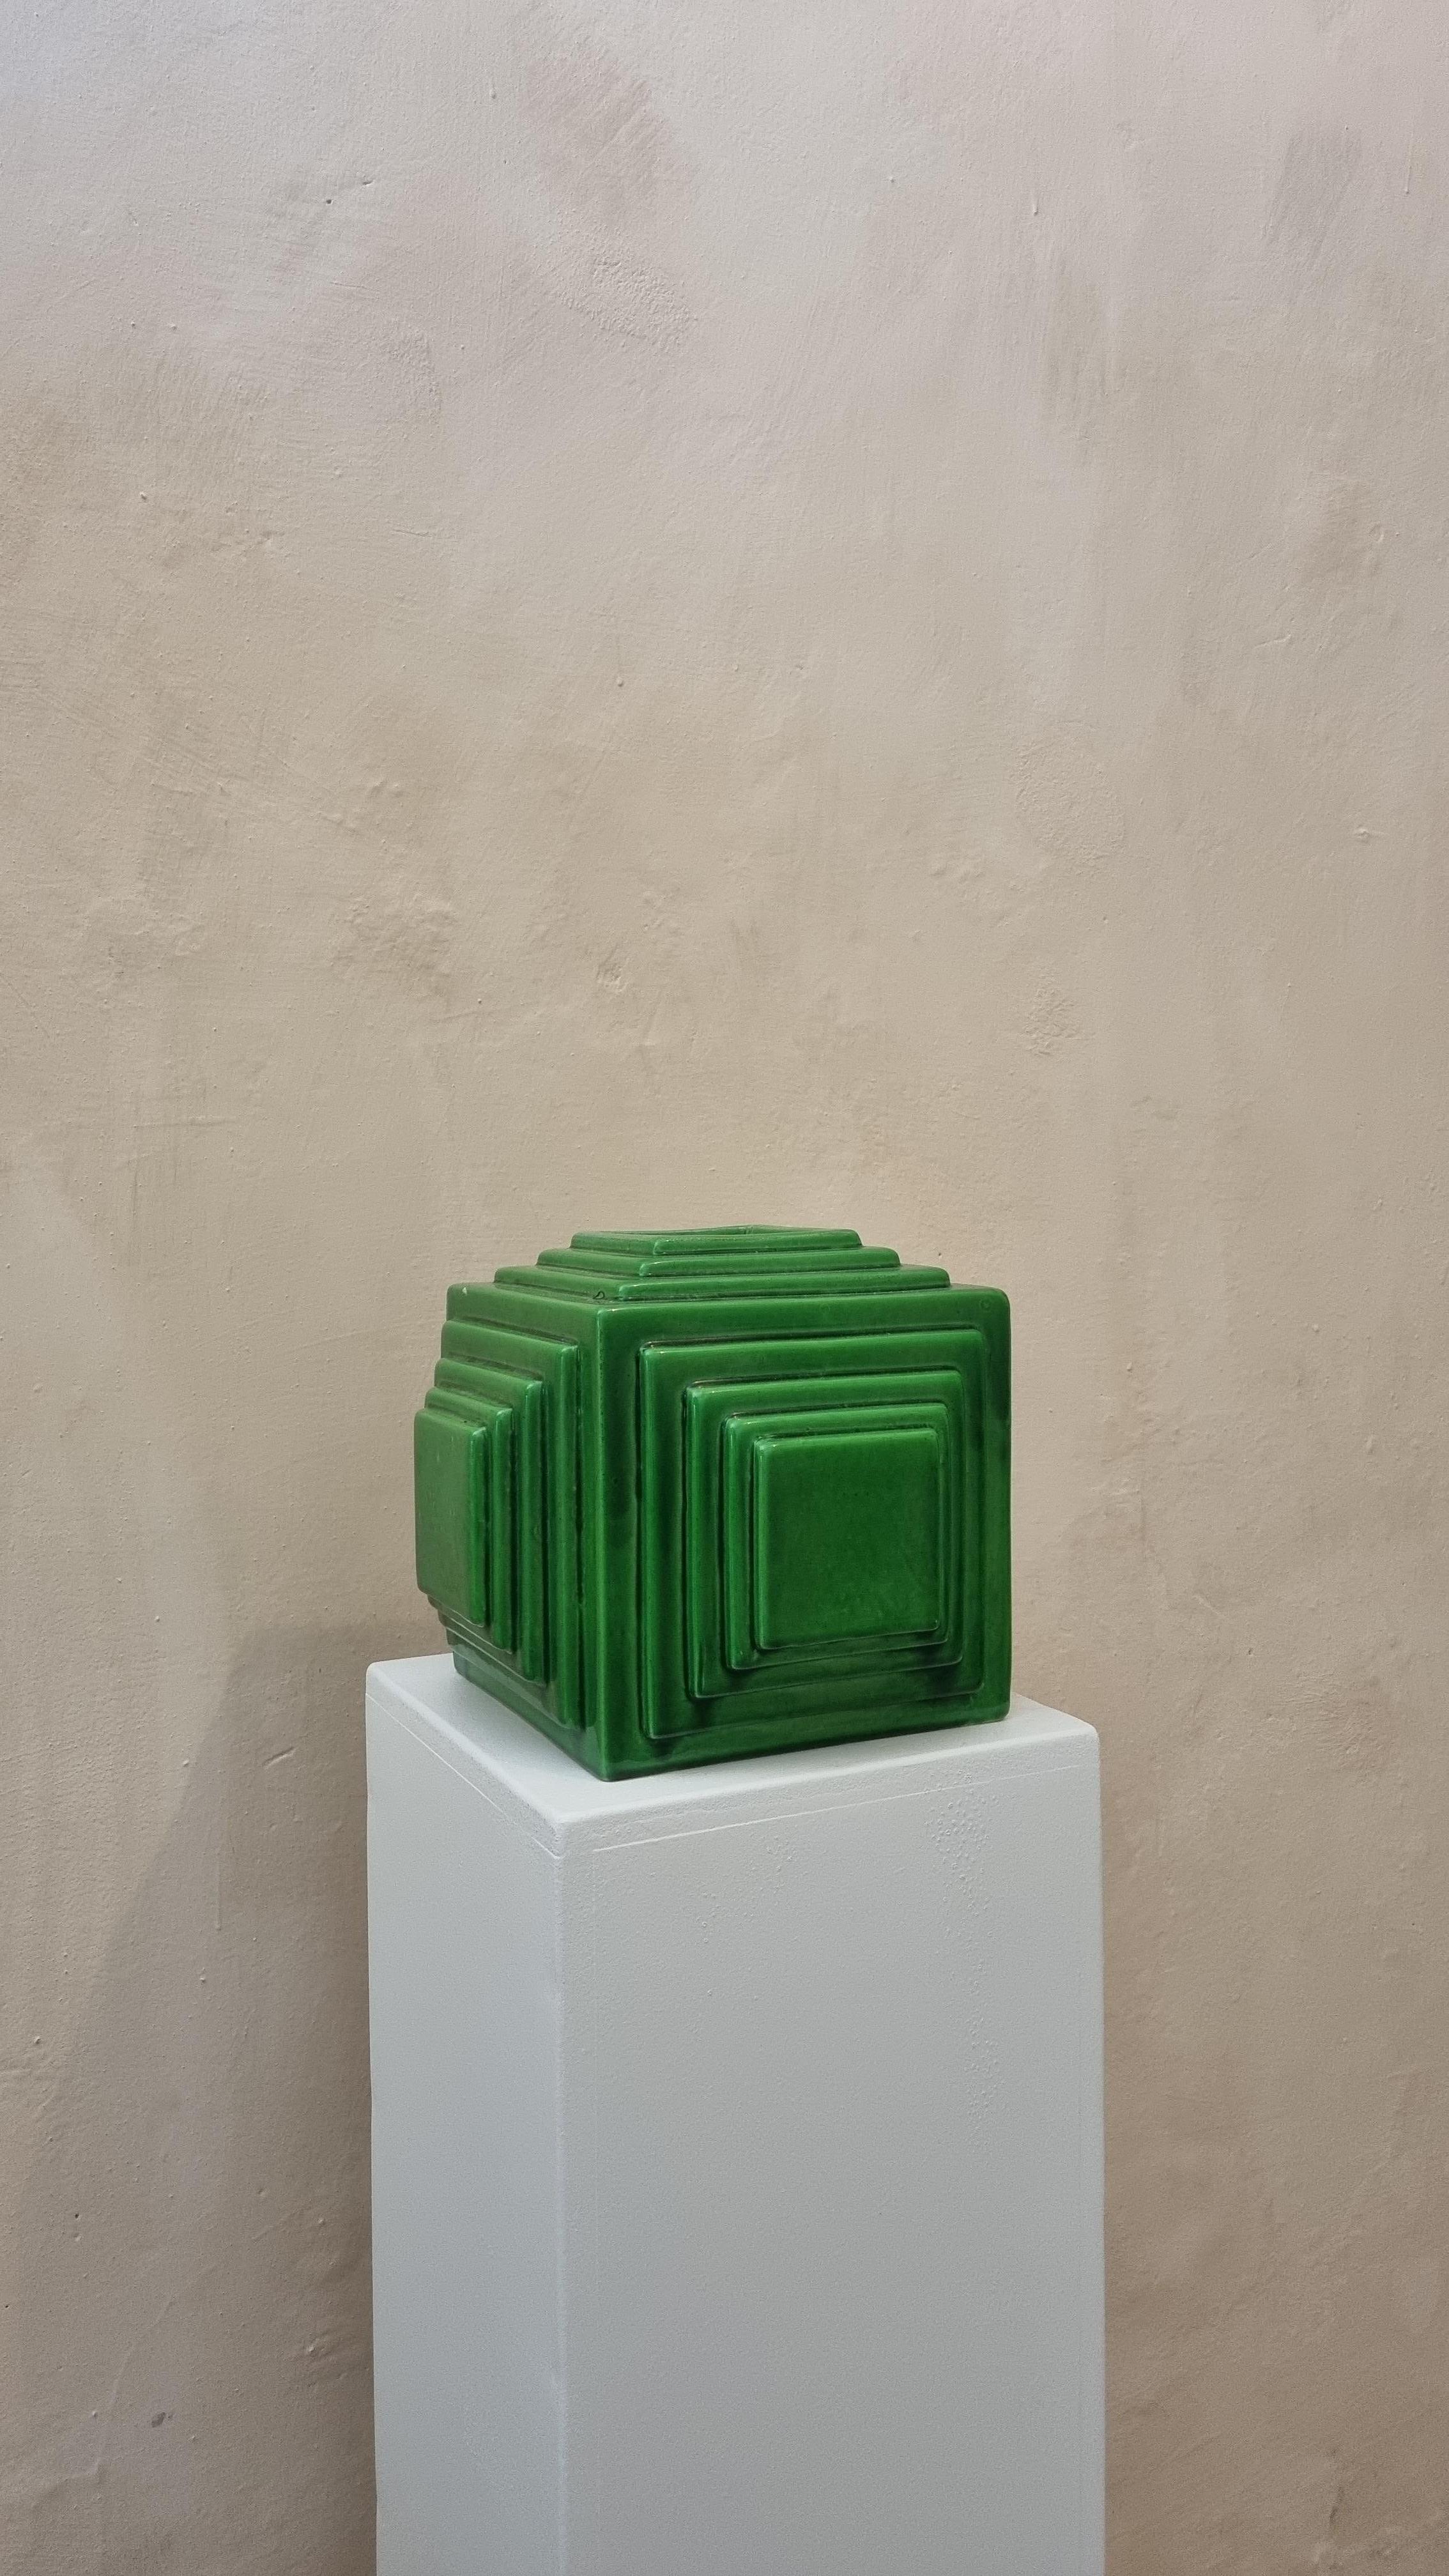 Keramisches Pflanzgefäß, hergestellt von Ceramiche Bitossi Montelupo, 70er Jahre.
Glasierte Keramik, grüner Bilddekor.
Jedes von Bitossi geschaffene Werk folgt einem sehr komplexen Arbeitsprozess, sowohl im formalen als auch im dekorativen